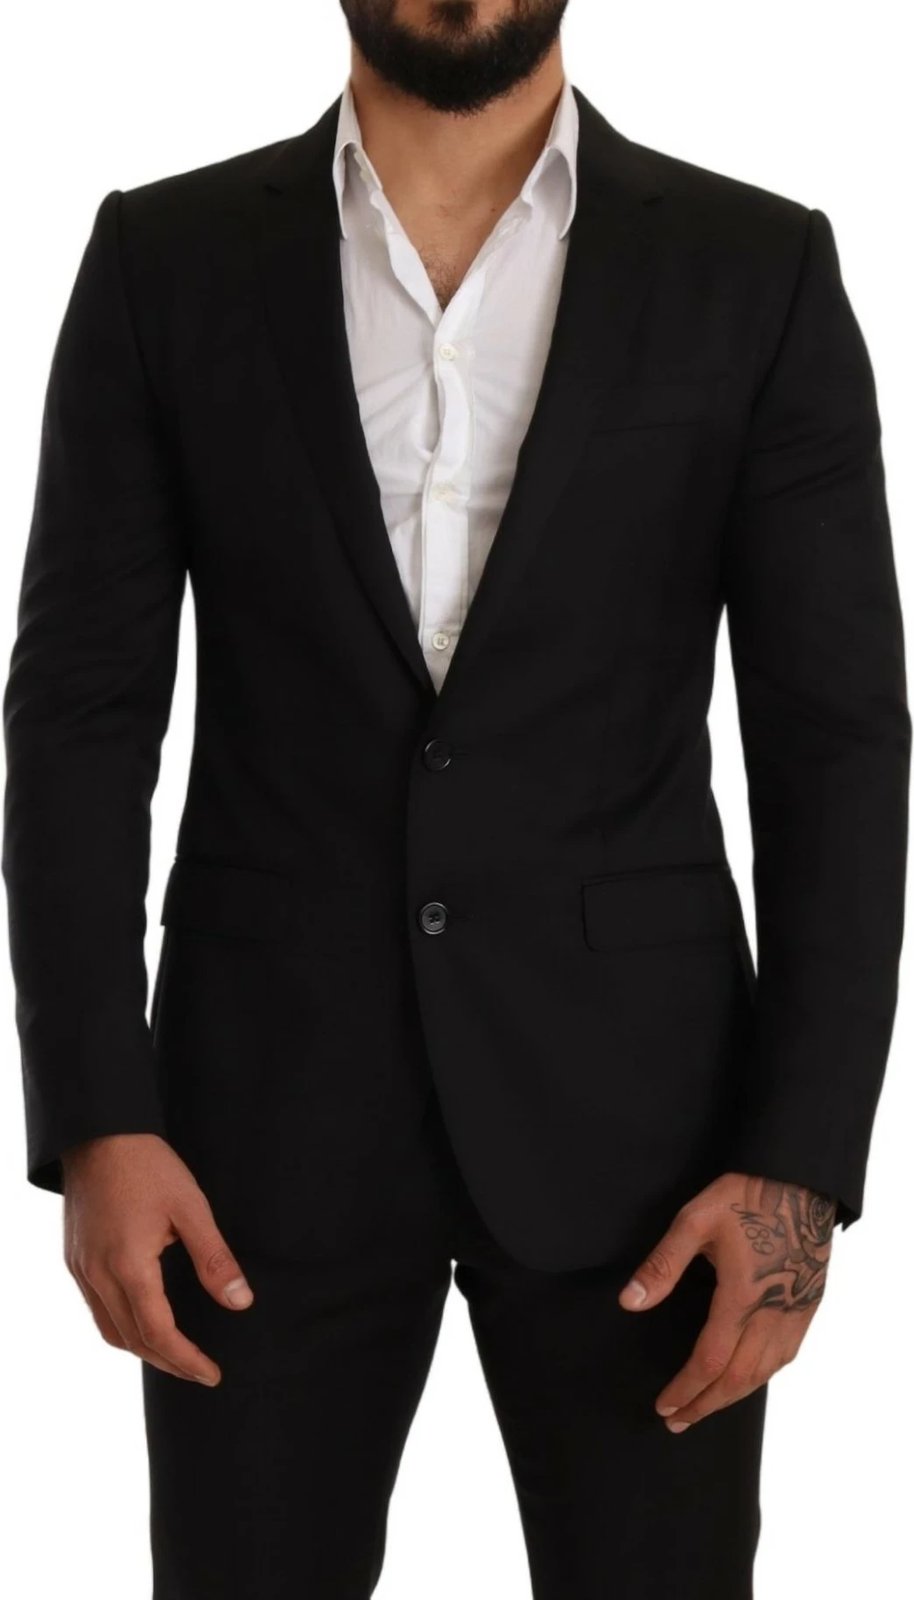 Kostum për meshkuj Dolce & Gabbana, i zi 